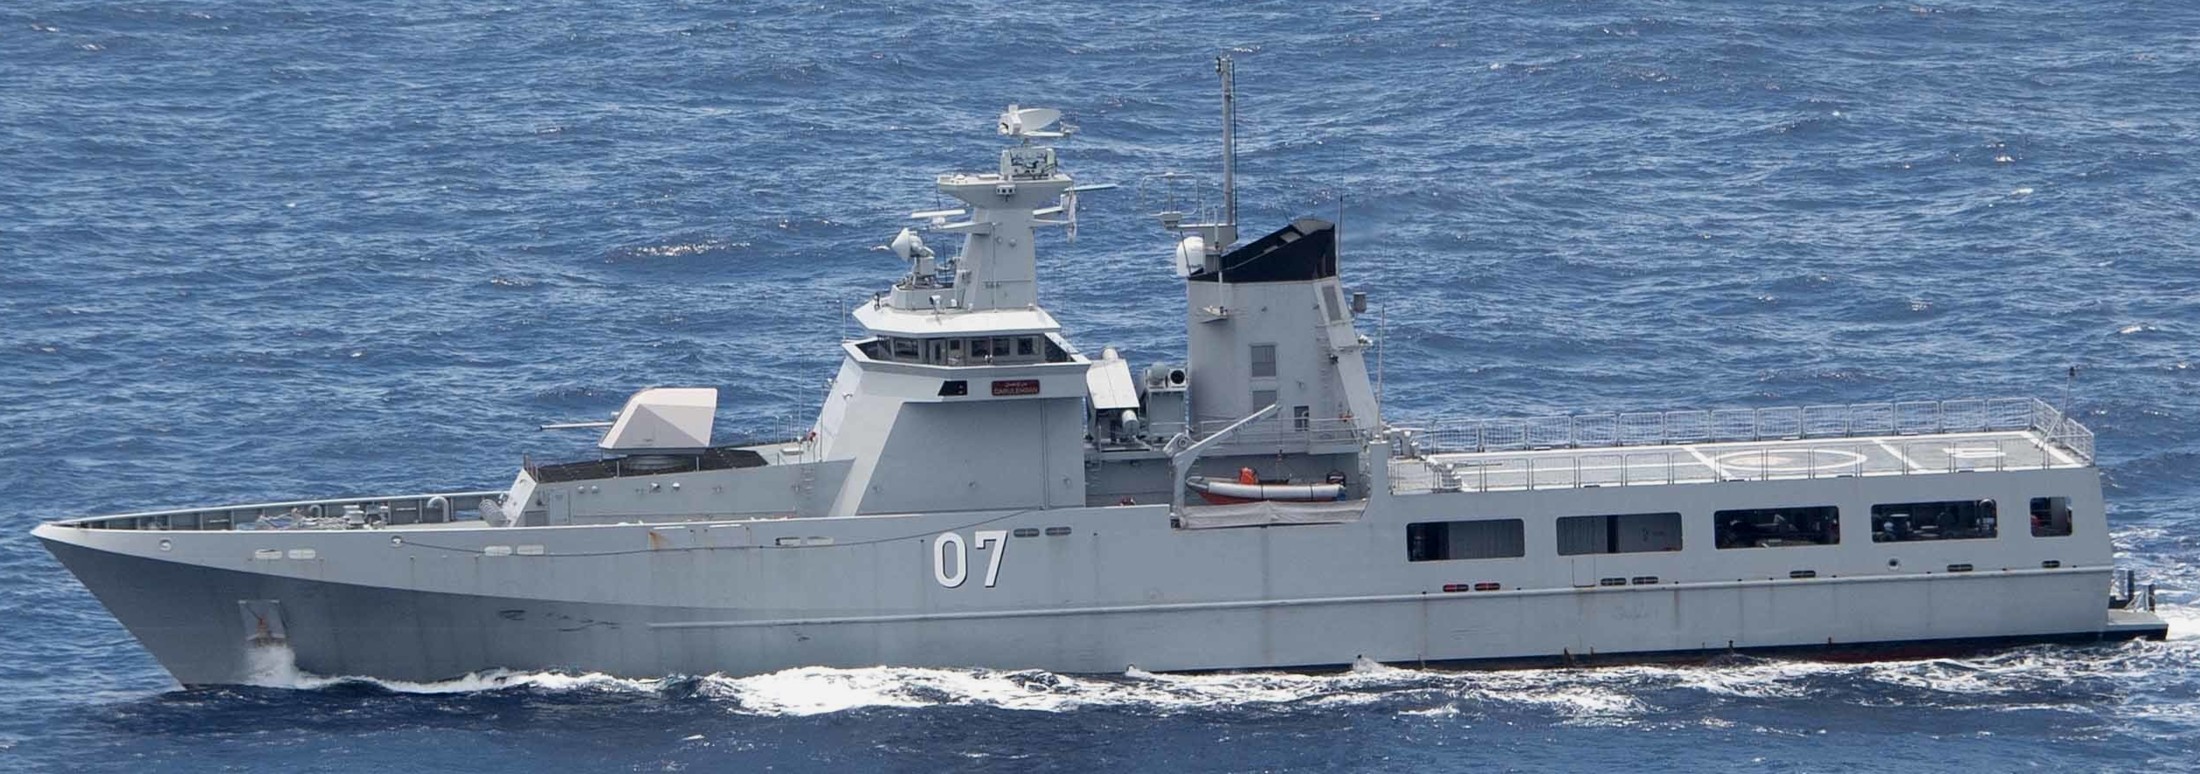 opv 07 kdb darulehsan offshore patrol vessel darussalem class royal brunei navy 08